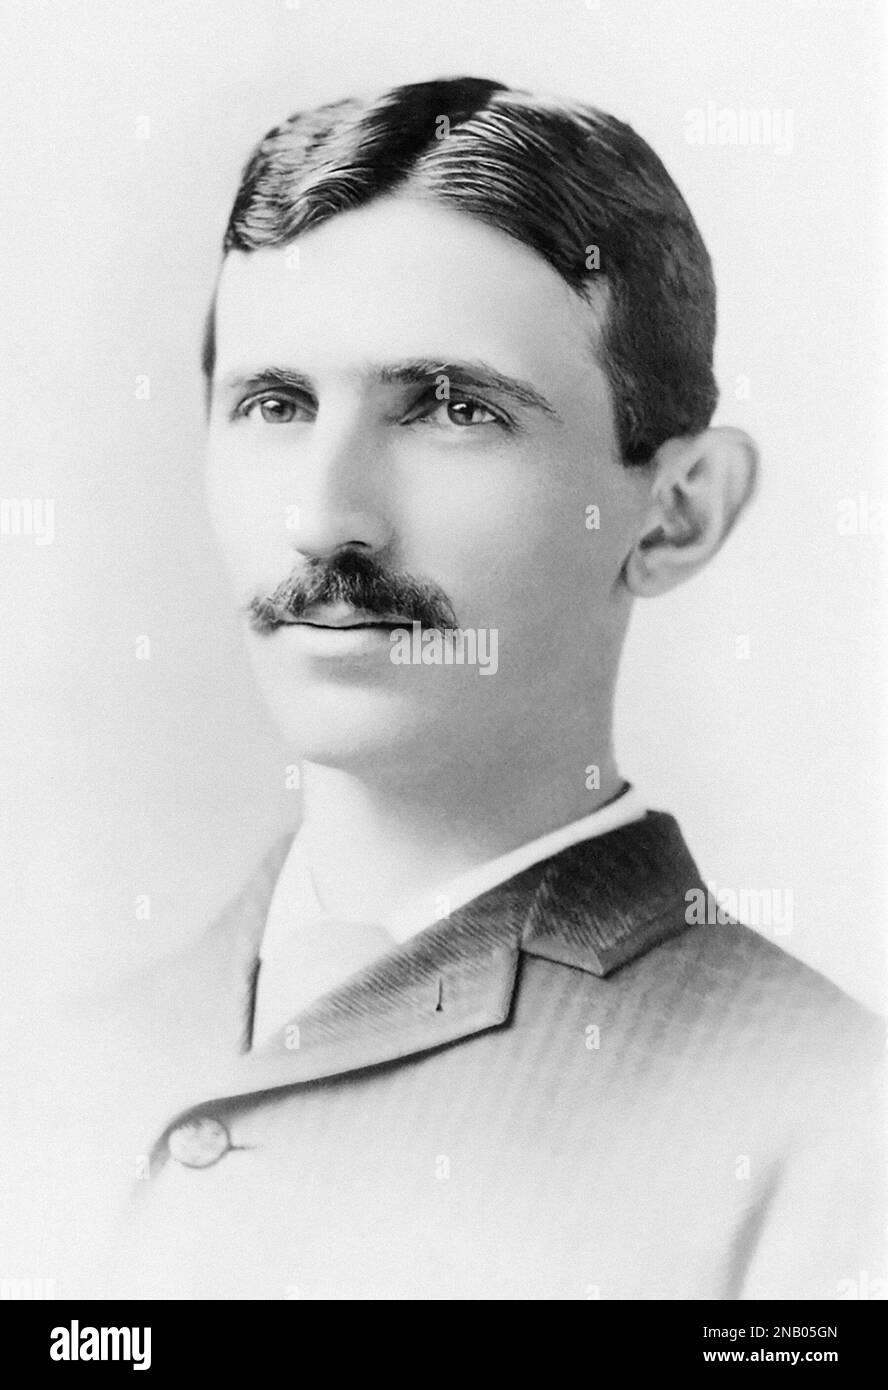 Nikola Tesla (1856-1943), inventeur serbe américain, ingénieur électrique, ingénieur mécanique et futuriste à 29 ans. (Photo : c1885) Banque D'Images